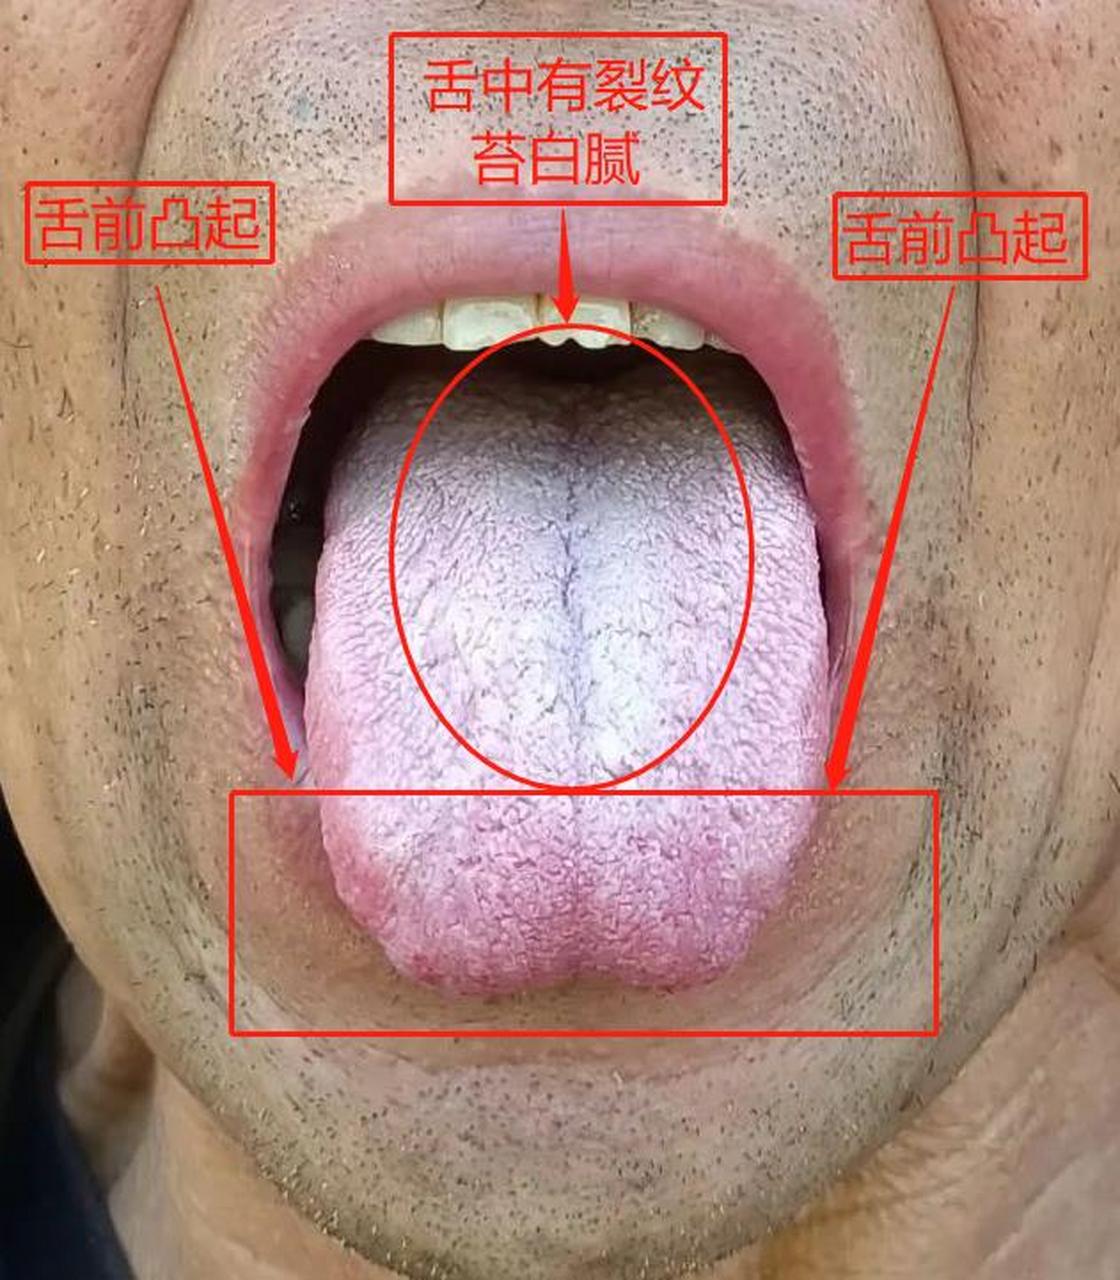 目前最难受的就是恶心,头晕,头蒙,我们一起来看舌象 标记1:舌前有凸起